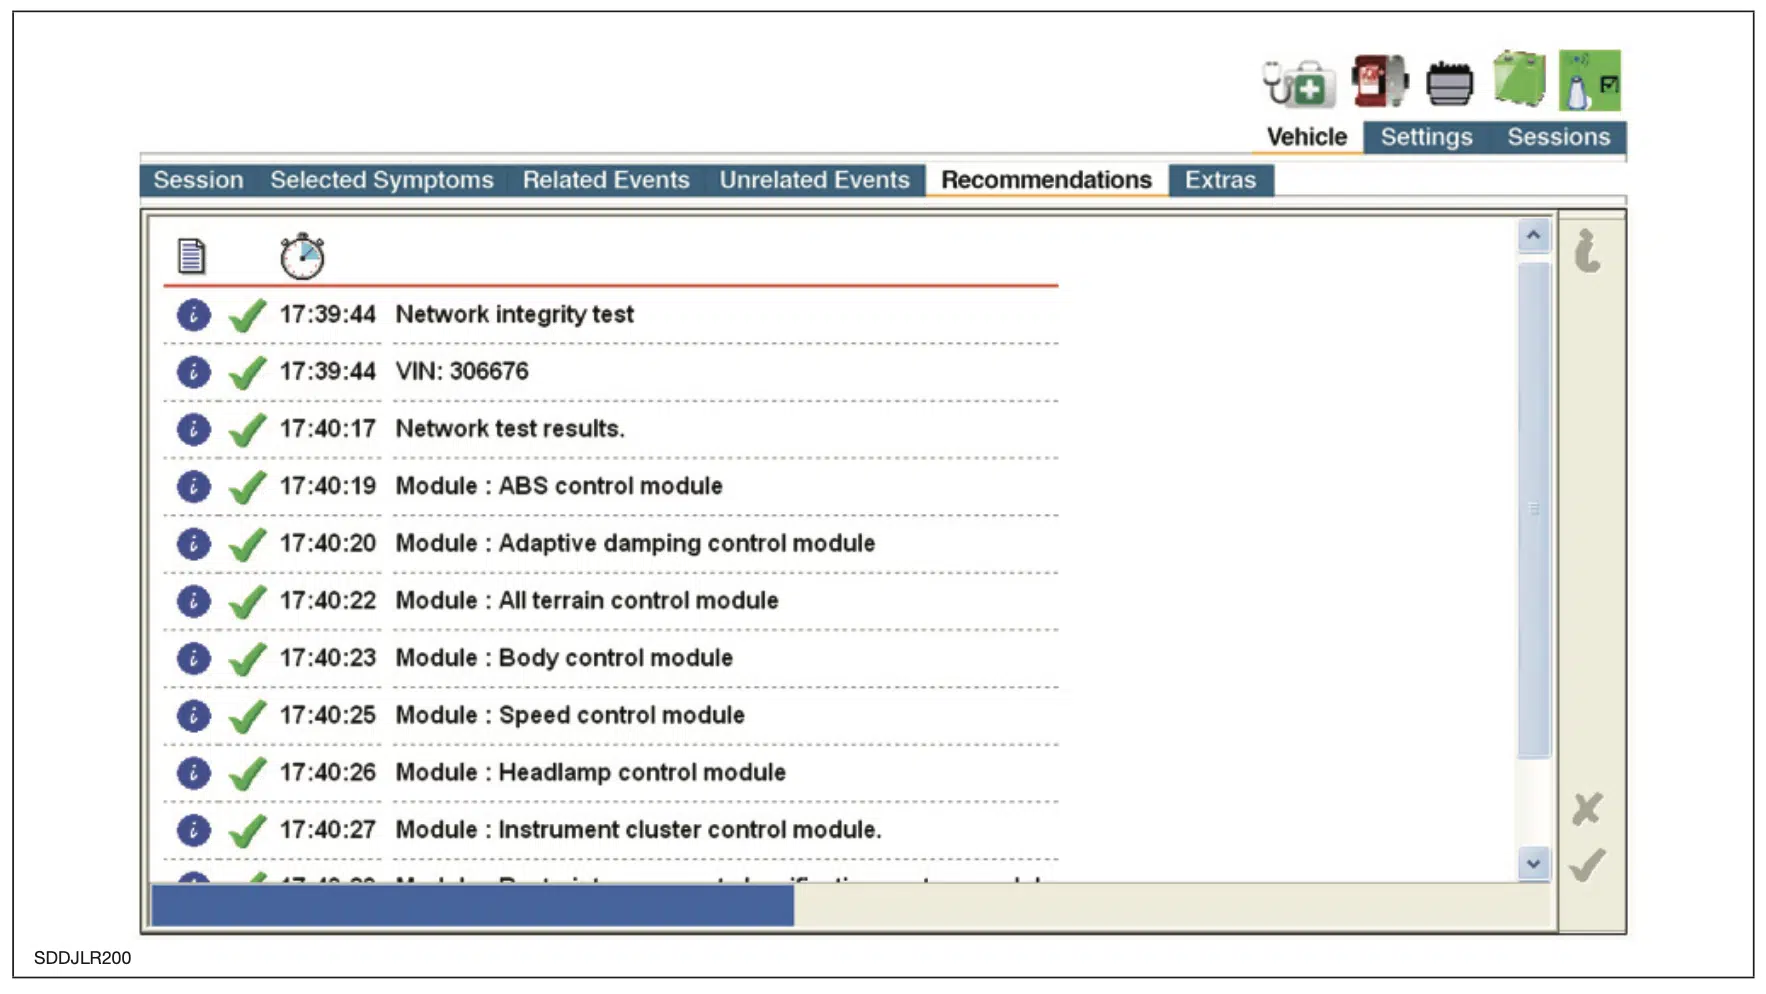 Captura de tela da sessão do software SDD da JLR para a lista de verificação de ações recomendadas após o relatório de sintomas do veículo